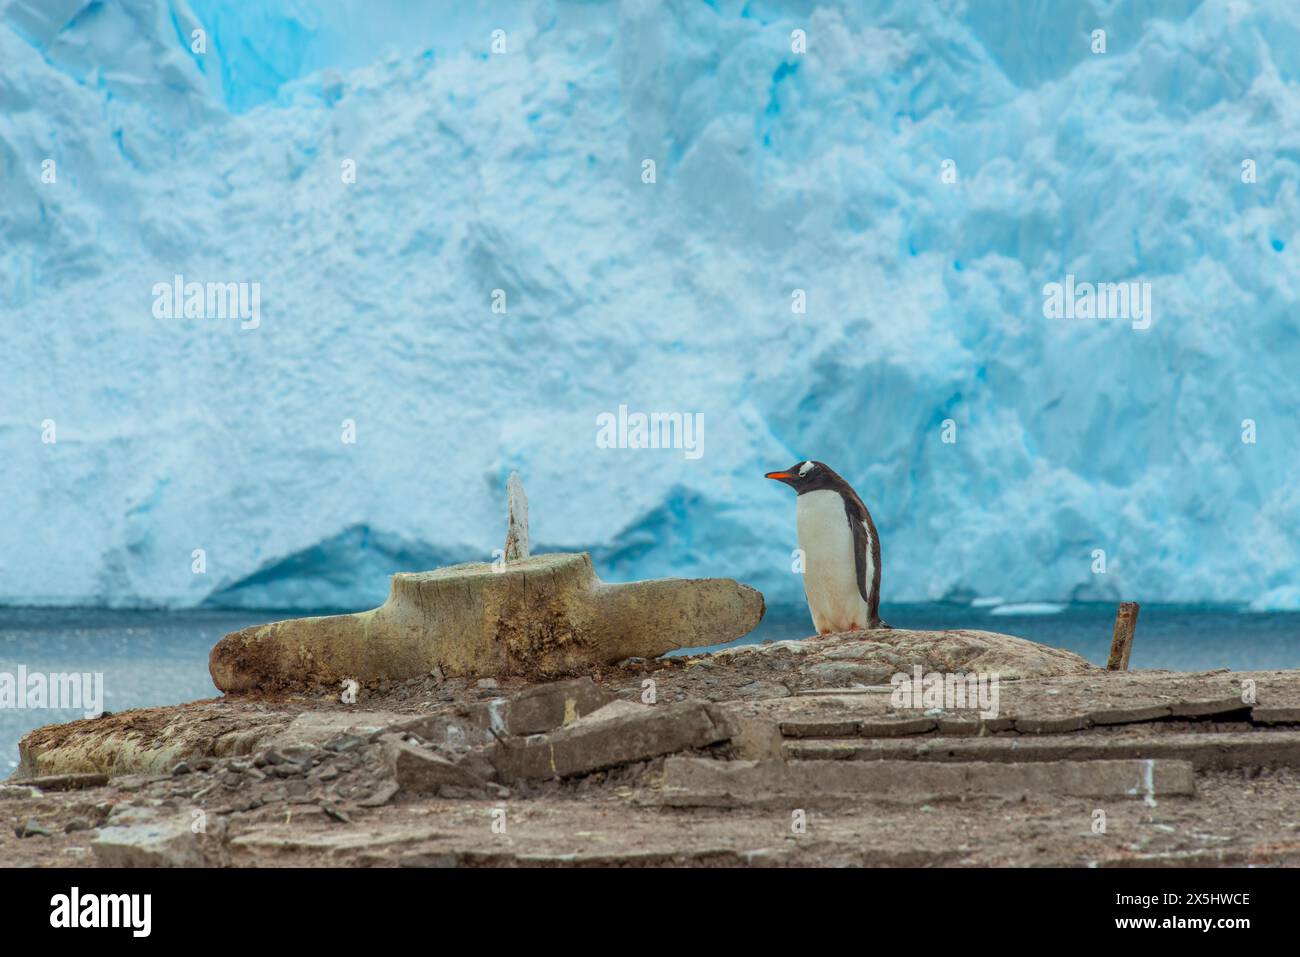 Hafen Von Neko, Antarktis. Pinguine nisten im Guano und Steine in einer Nookery. Stockfoto